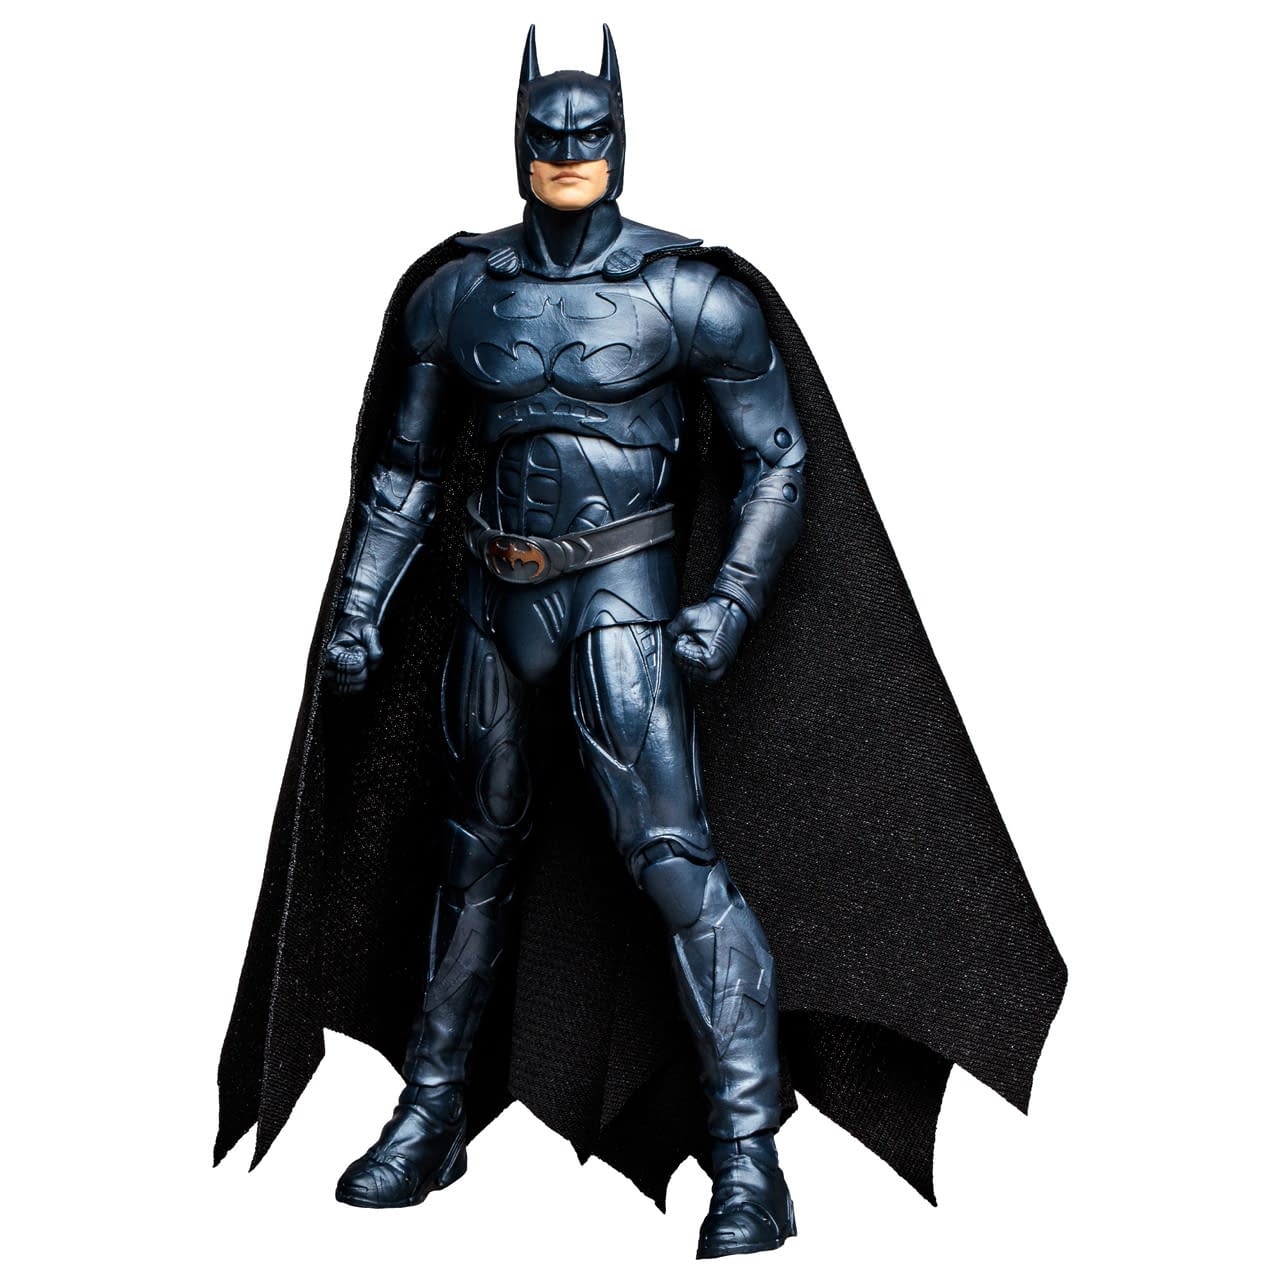 Идеальный бэтмен. Фигурка Batman Робин 6056692. Batman movie participants.